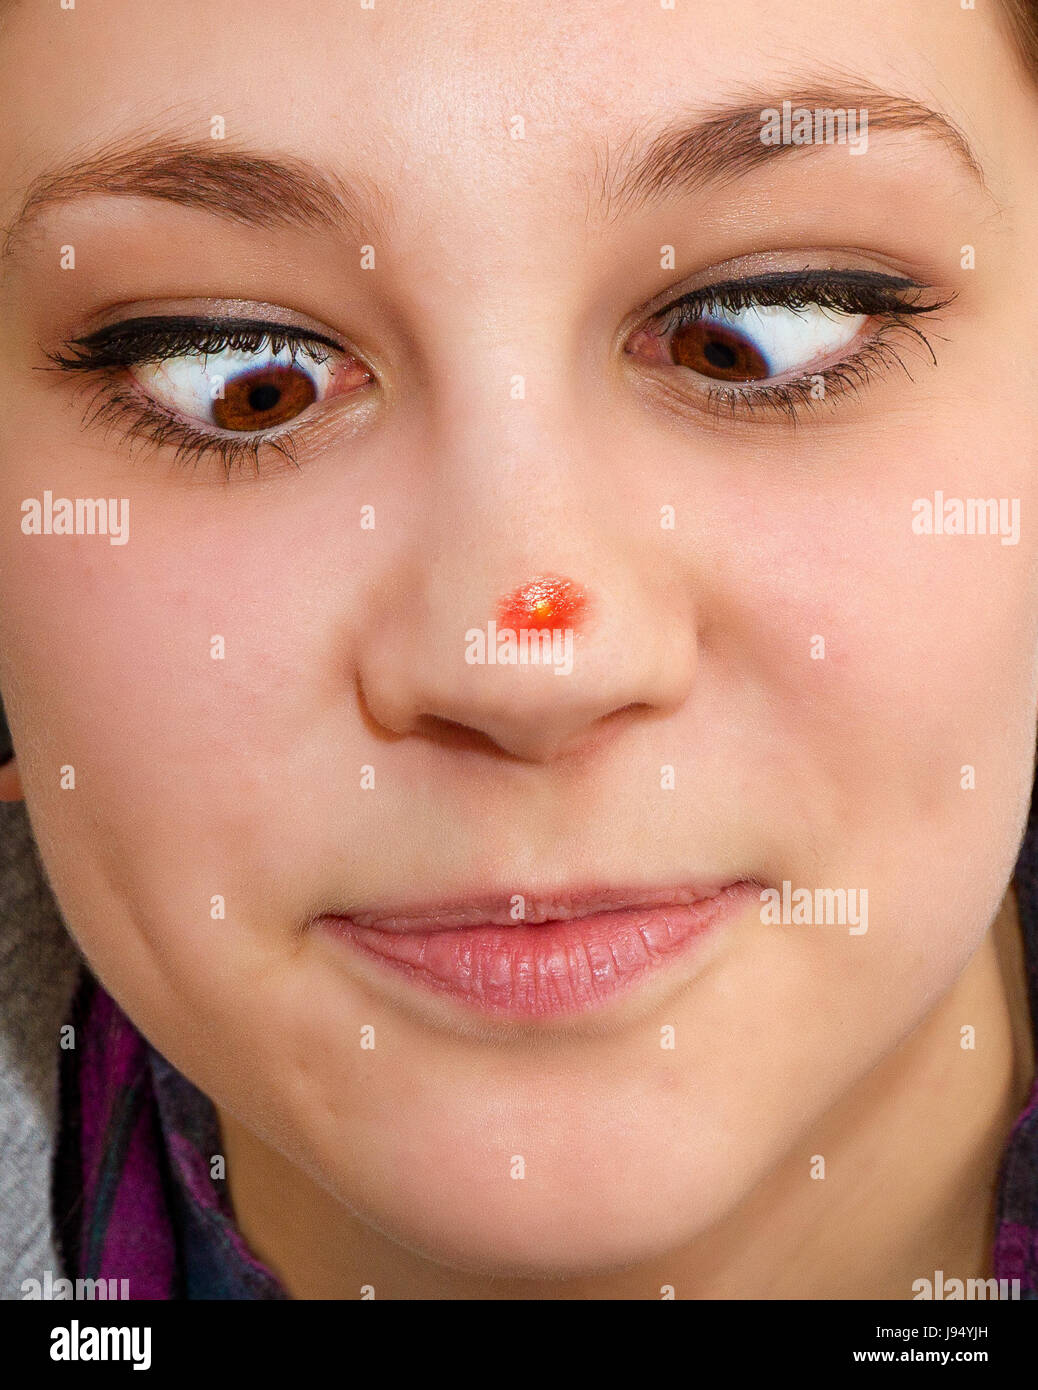 Gros boutons sur le nez Photo Stock - Alamy